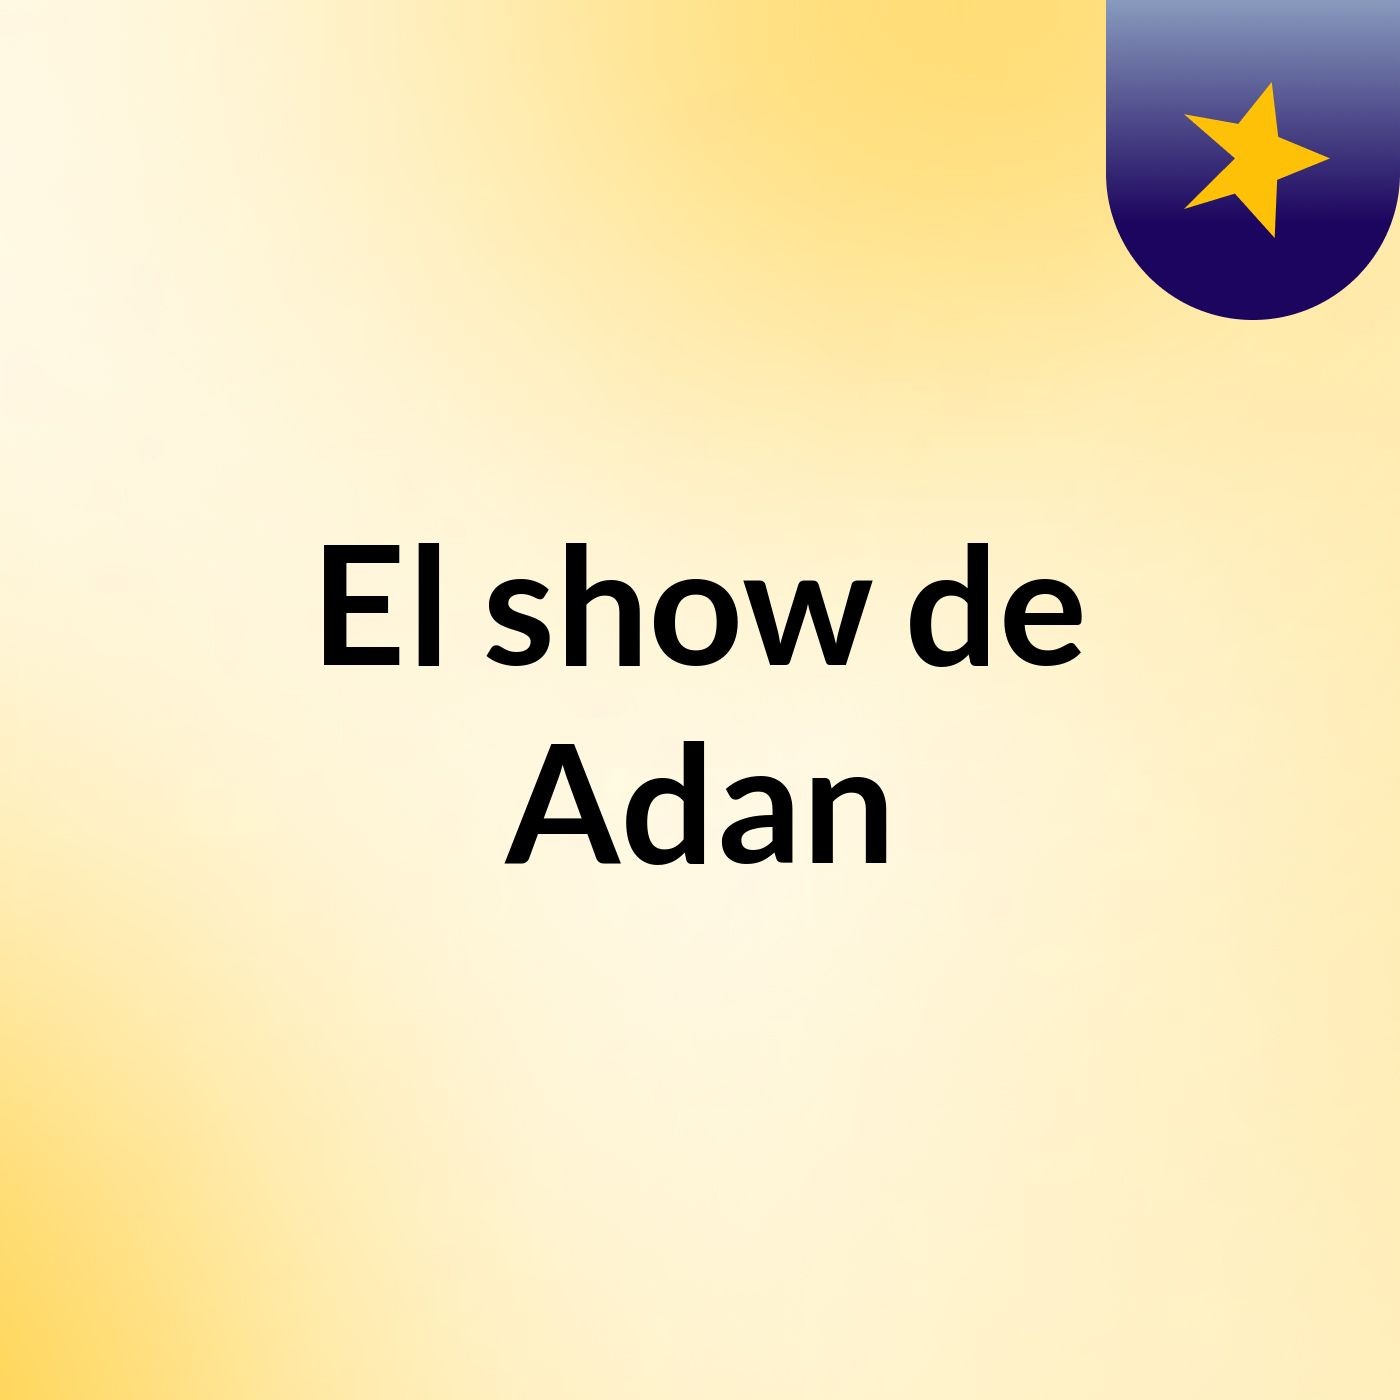 El show de Adan